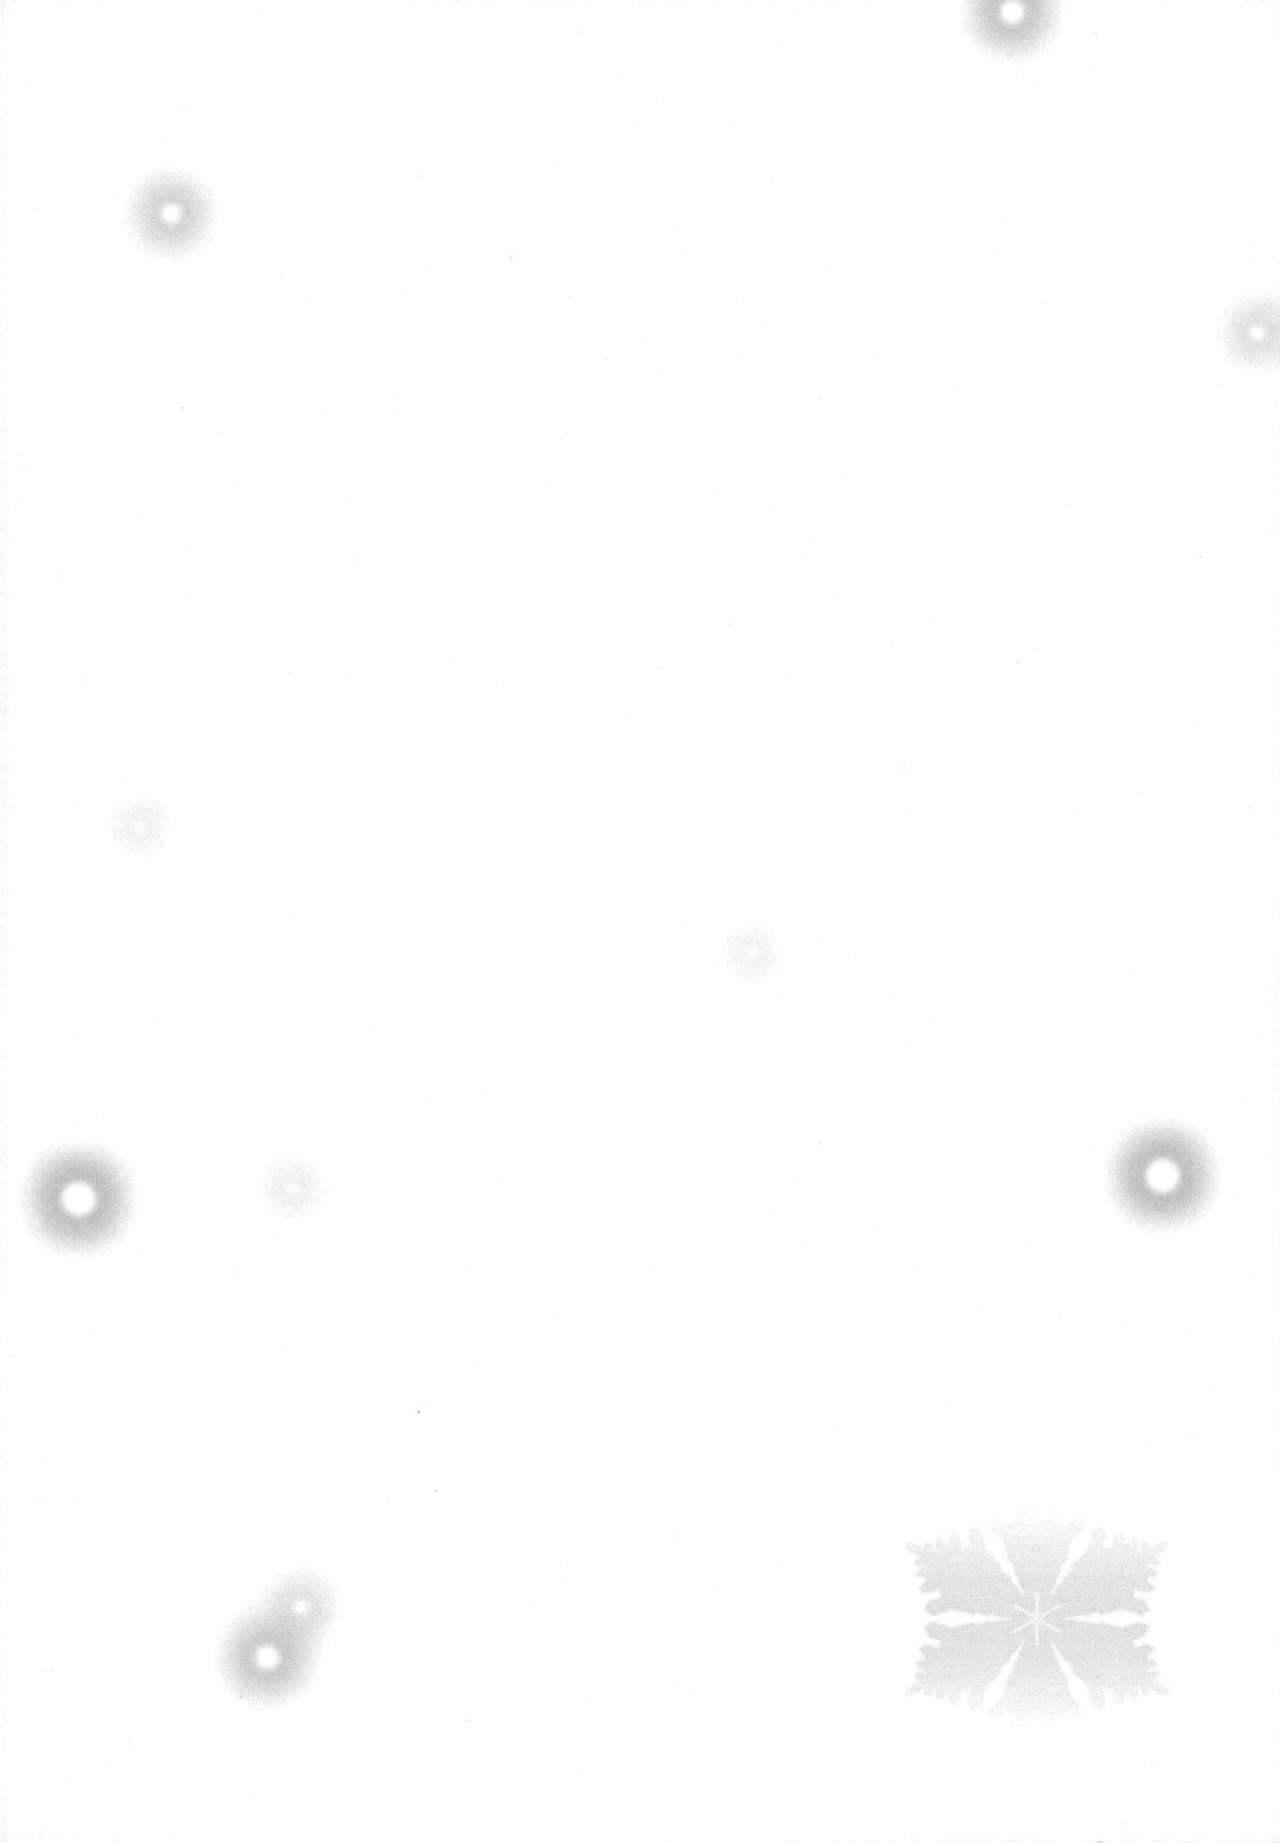 (SC57) [Jekyll and Hyde (Mizuki Makoto)] Kazaoka Mari no Seifuku to Yuukyuu (WHITE ALBUM 2)(chinese) [121028](サンクリ57) [Jekyll and Hyde (観月真)] 風岡麻理の制服と有休(WA2中華推廣促進委員會漢化)